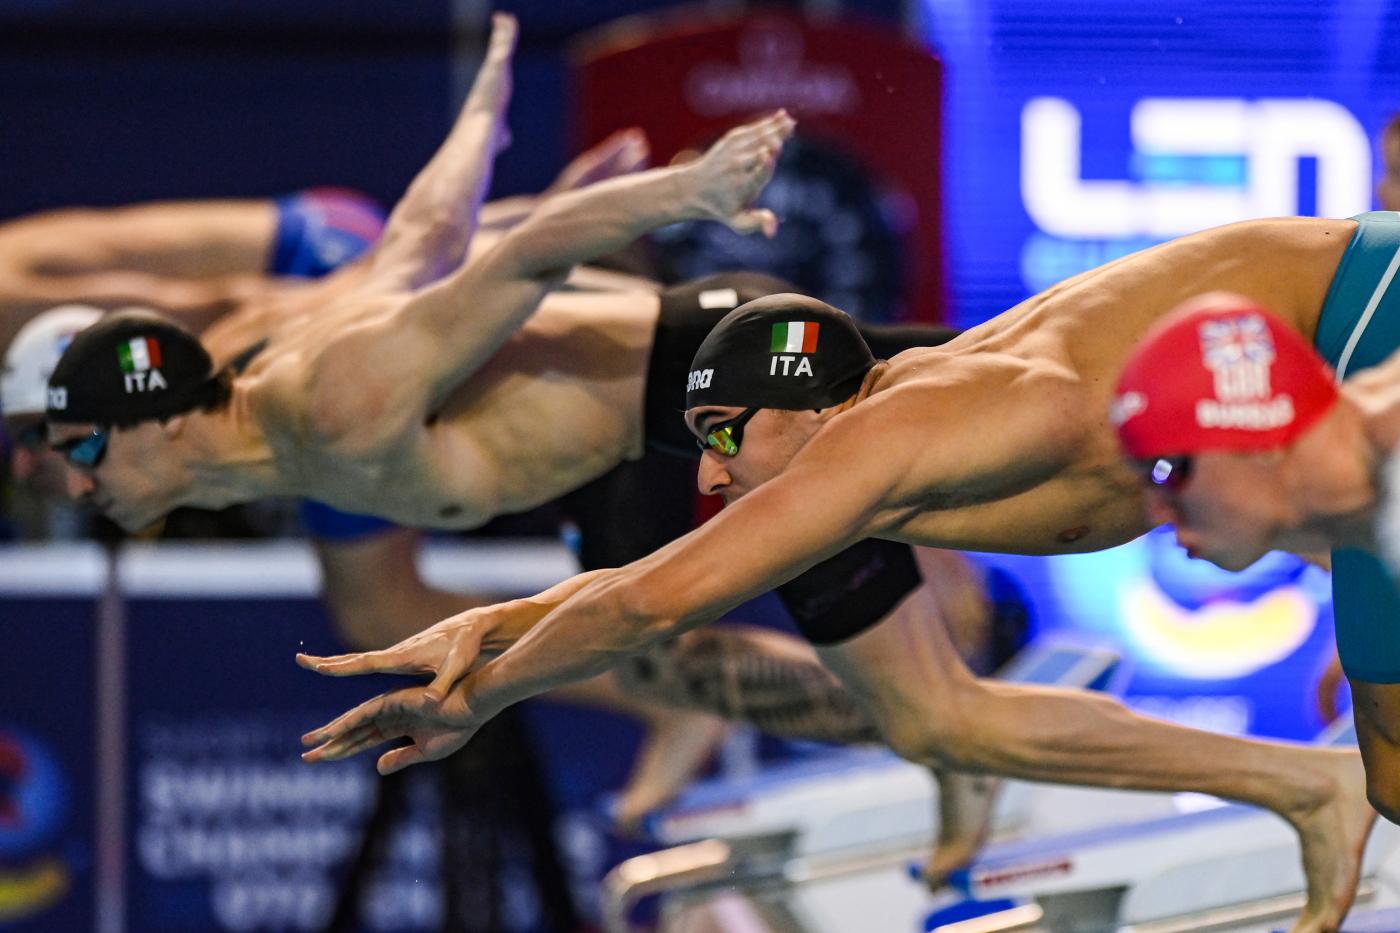 Nuoto, Leonardo Deplano felice: “Prestazione bellissima”. E Zazzeri fa il tifo: “Un artista”